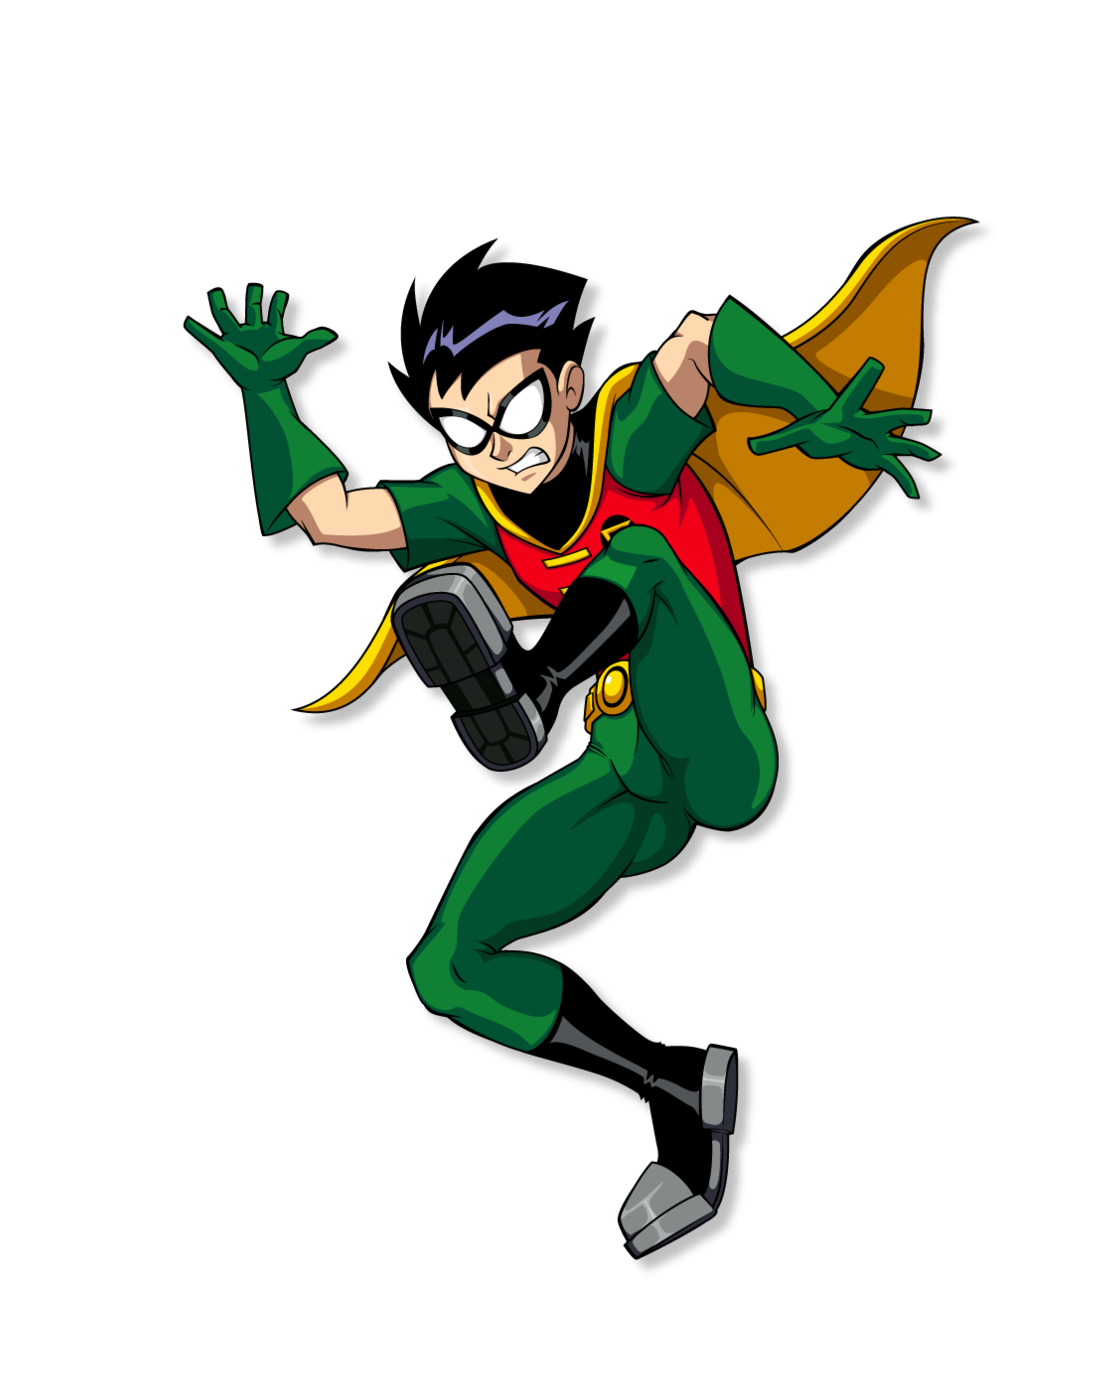 Superhero Robin PNG HD Image pngteam.com